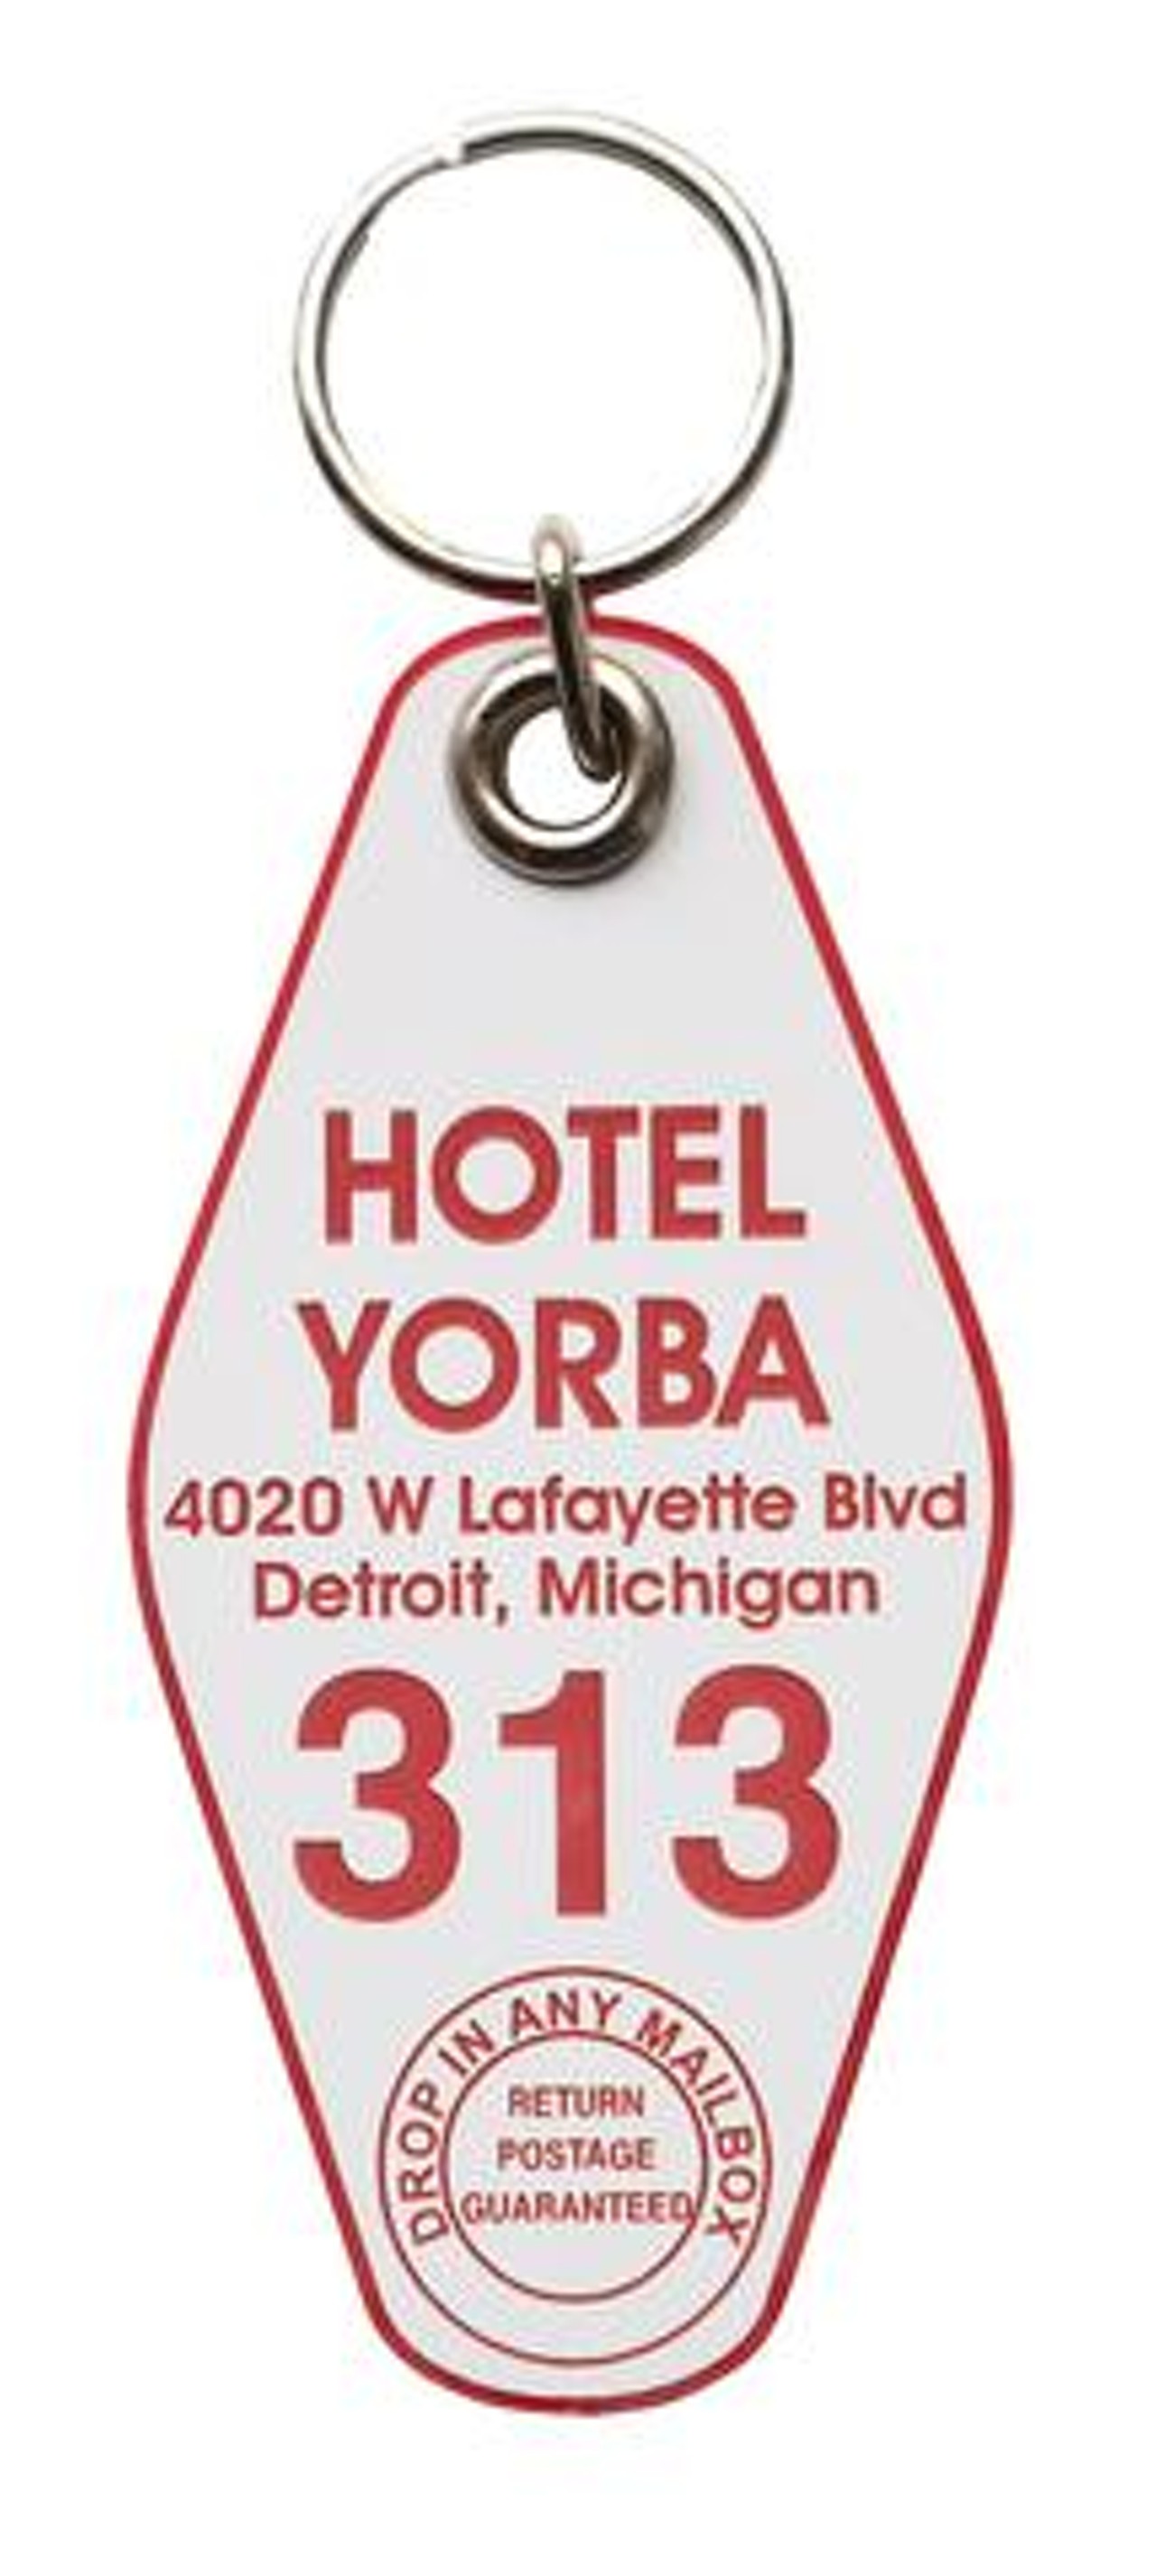 Hotel Yorba motel-style keychain, $6.